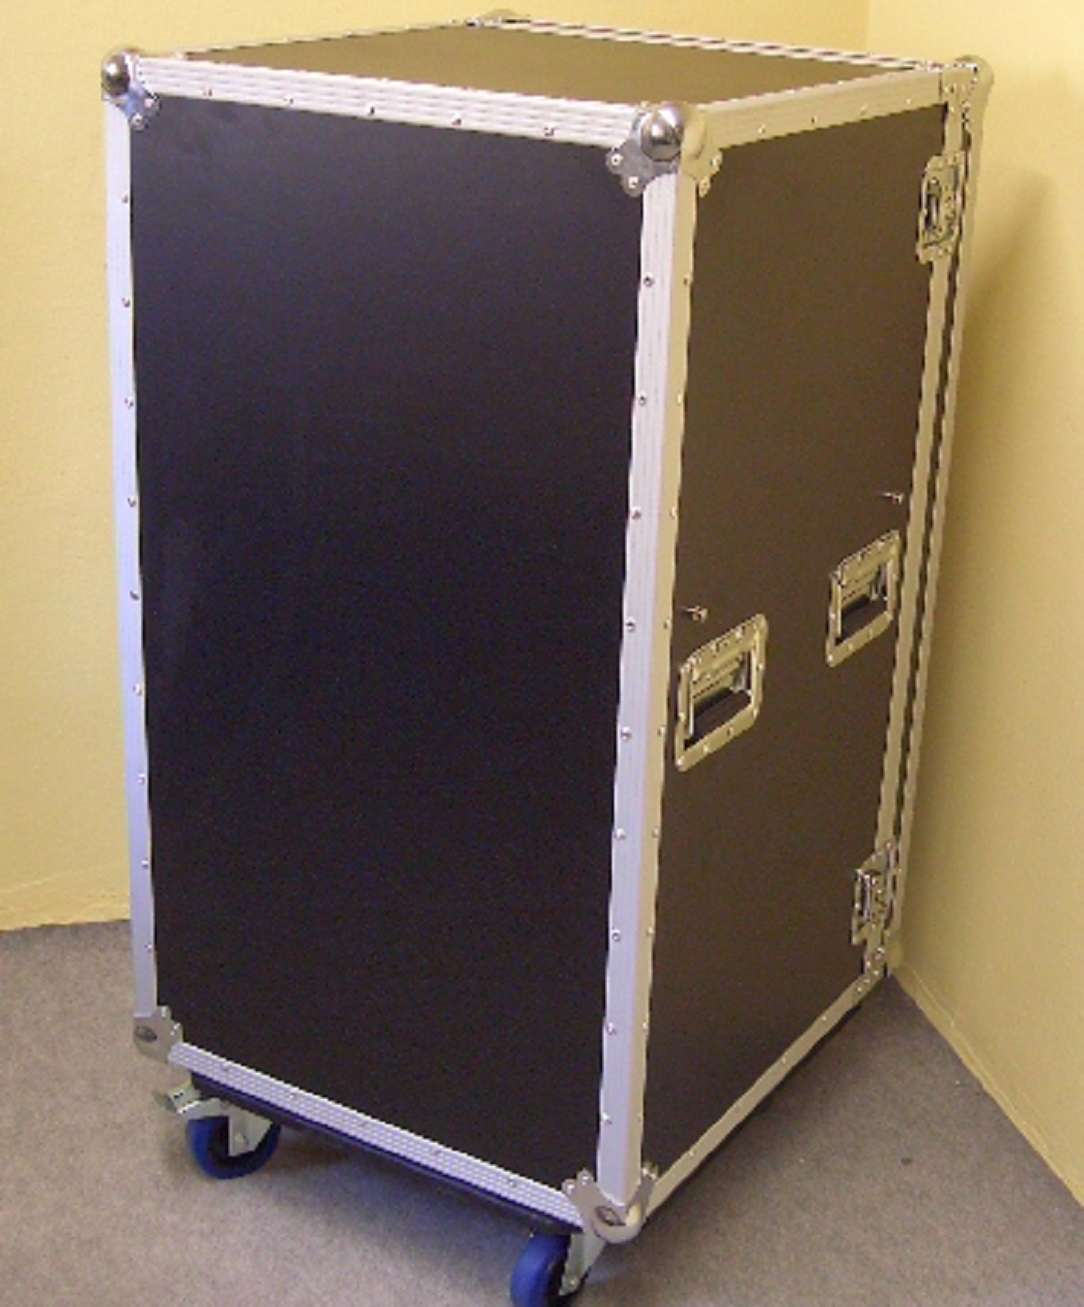 Roadinger Universal Schubladen Case Ds-1 Rollbar Schubladencase Transportcase for sale online